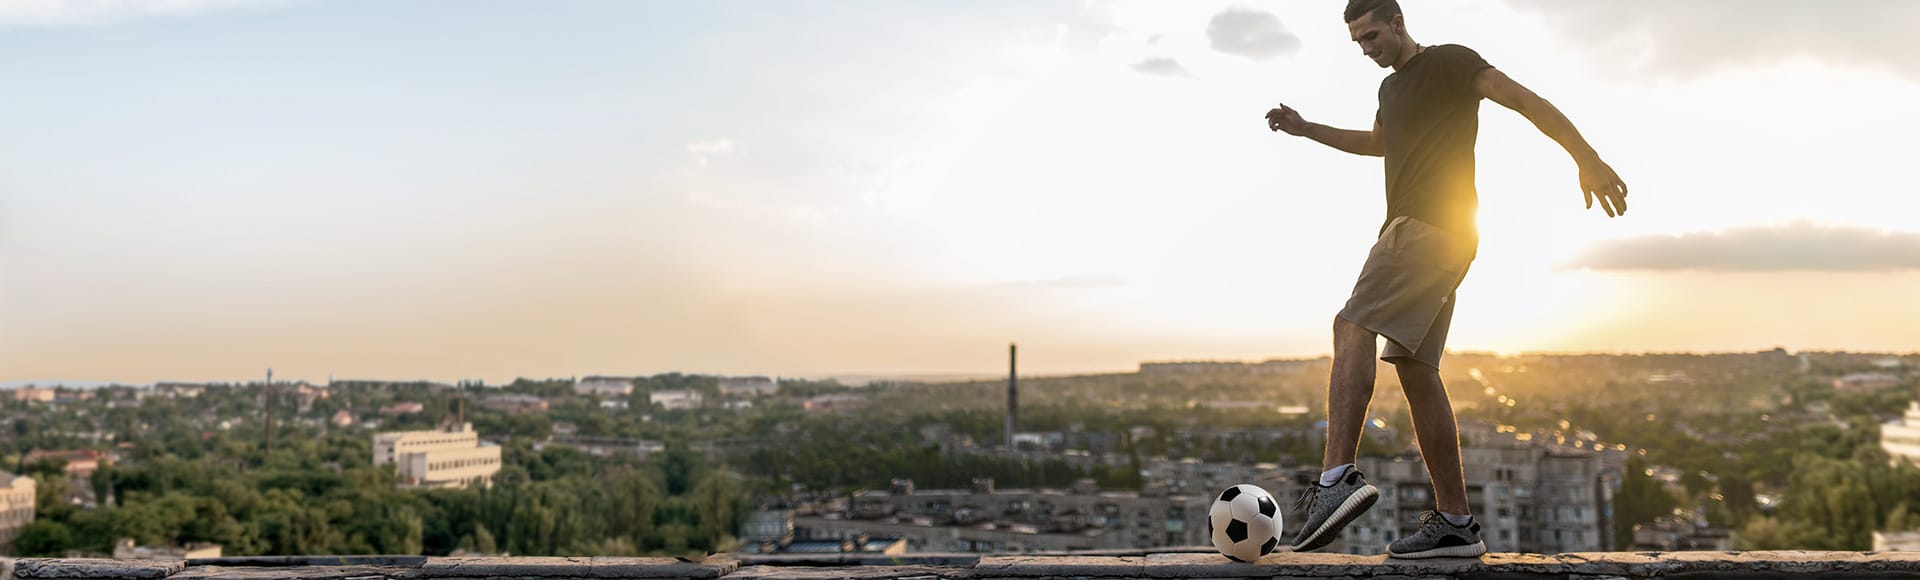 Ein junger Mann spielt Fußball auf einem Flachdach